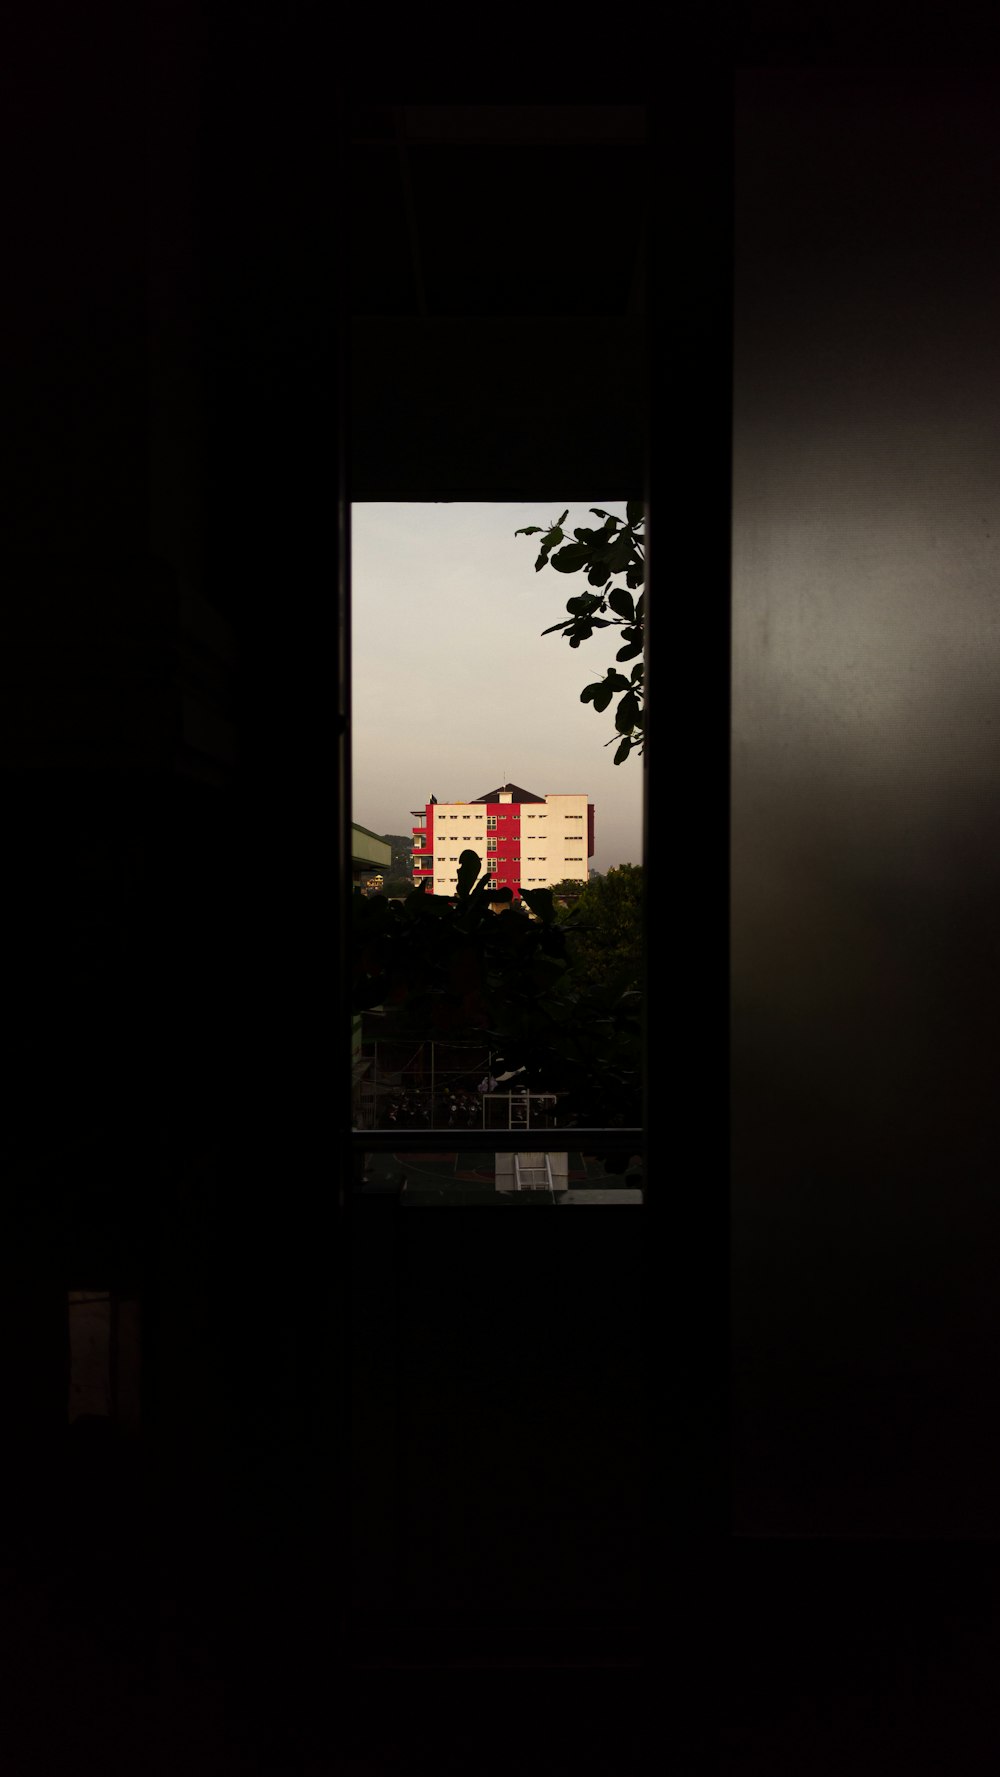 Una vista de un edificio a través de una puerta